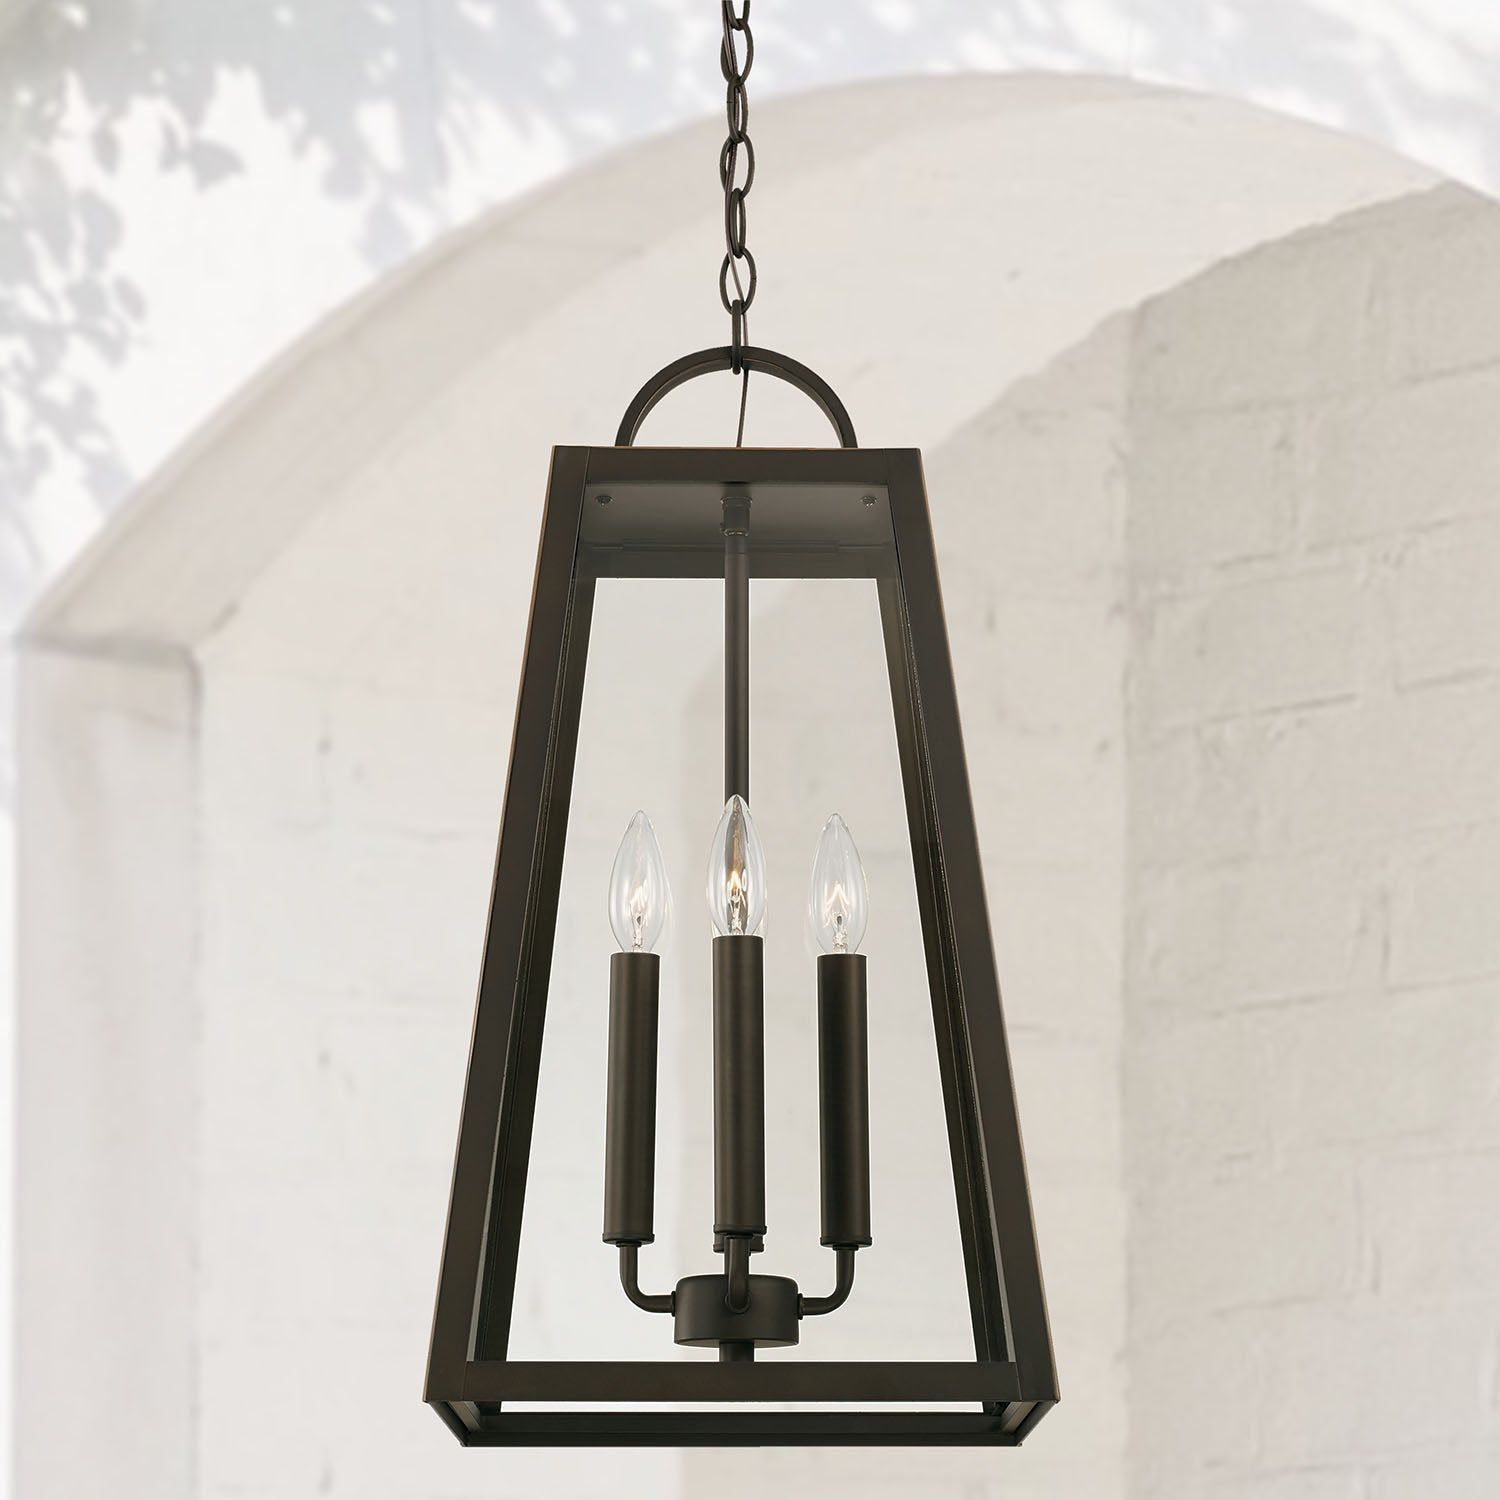 Leighton 4-Light Outdoor Hanging Lantern